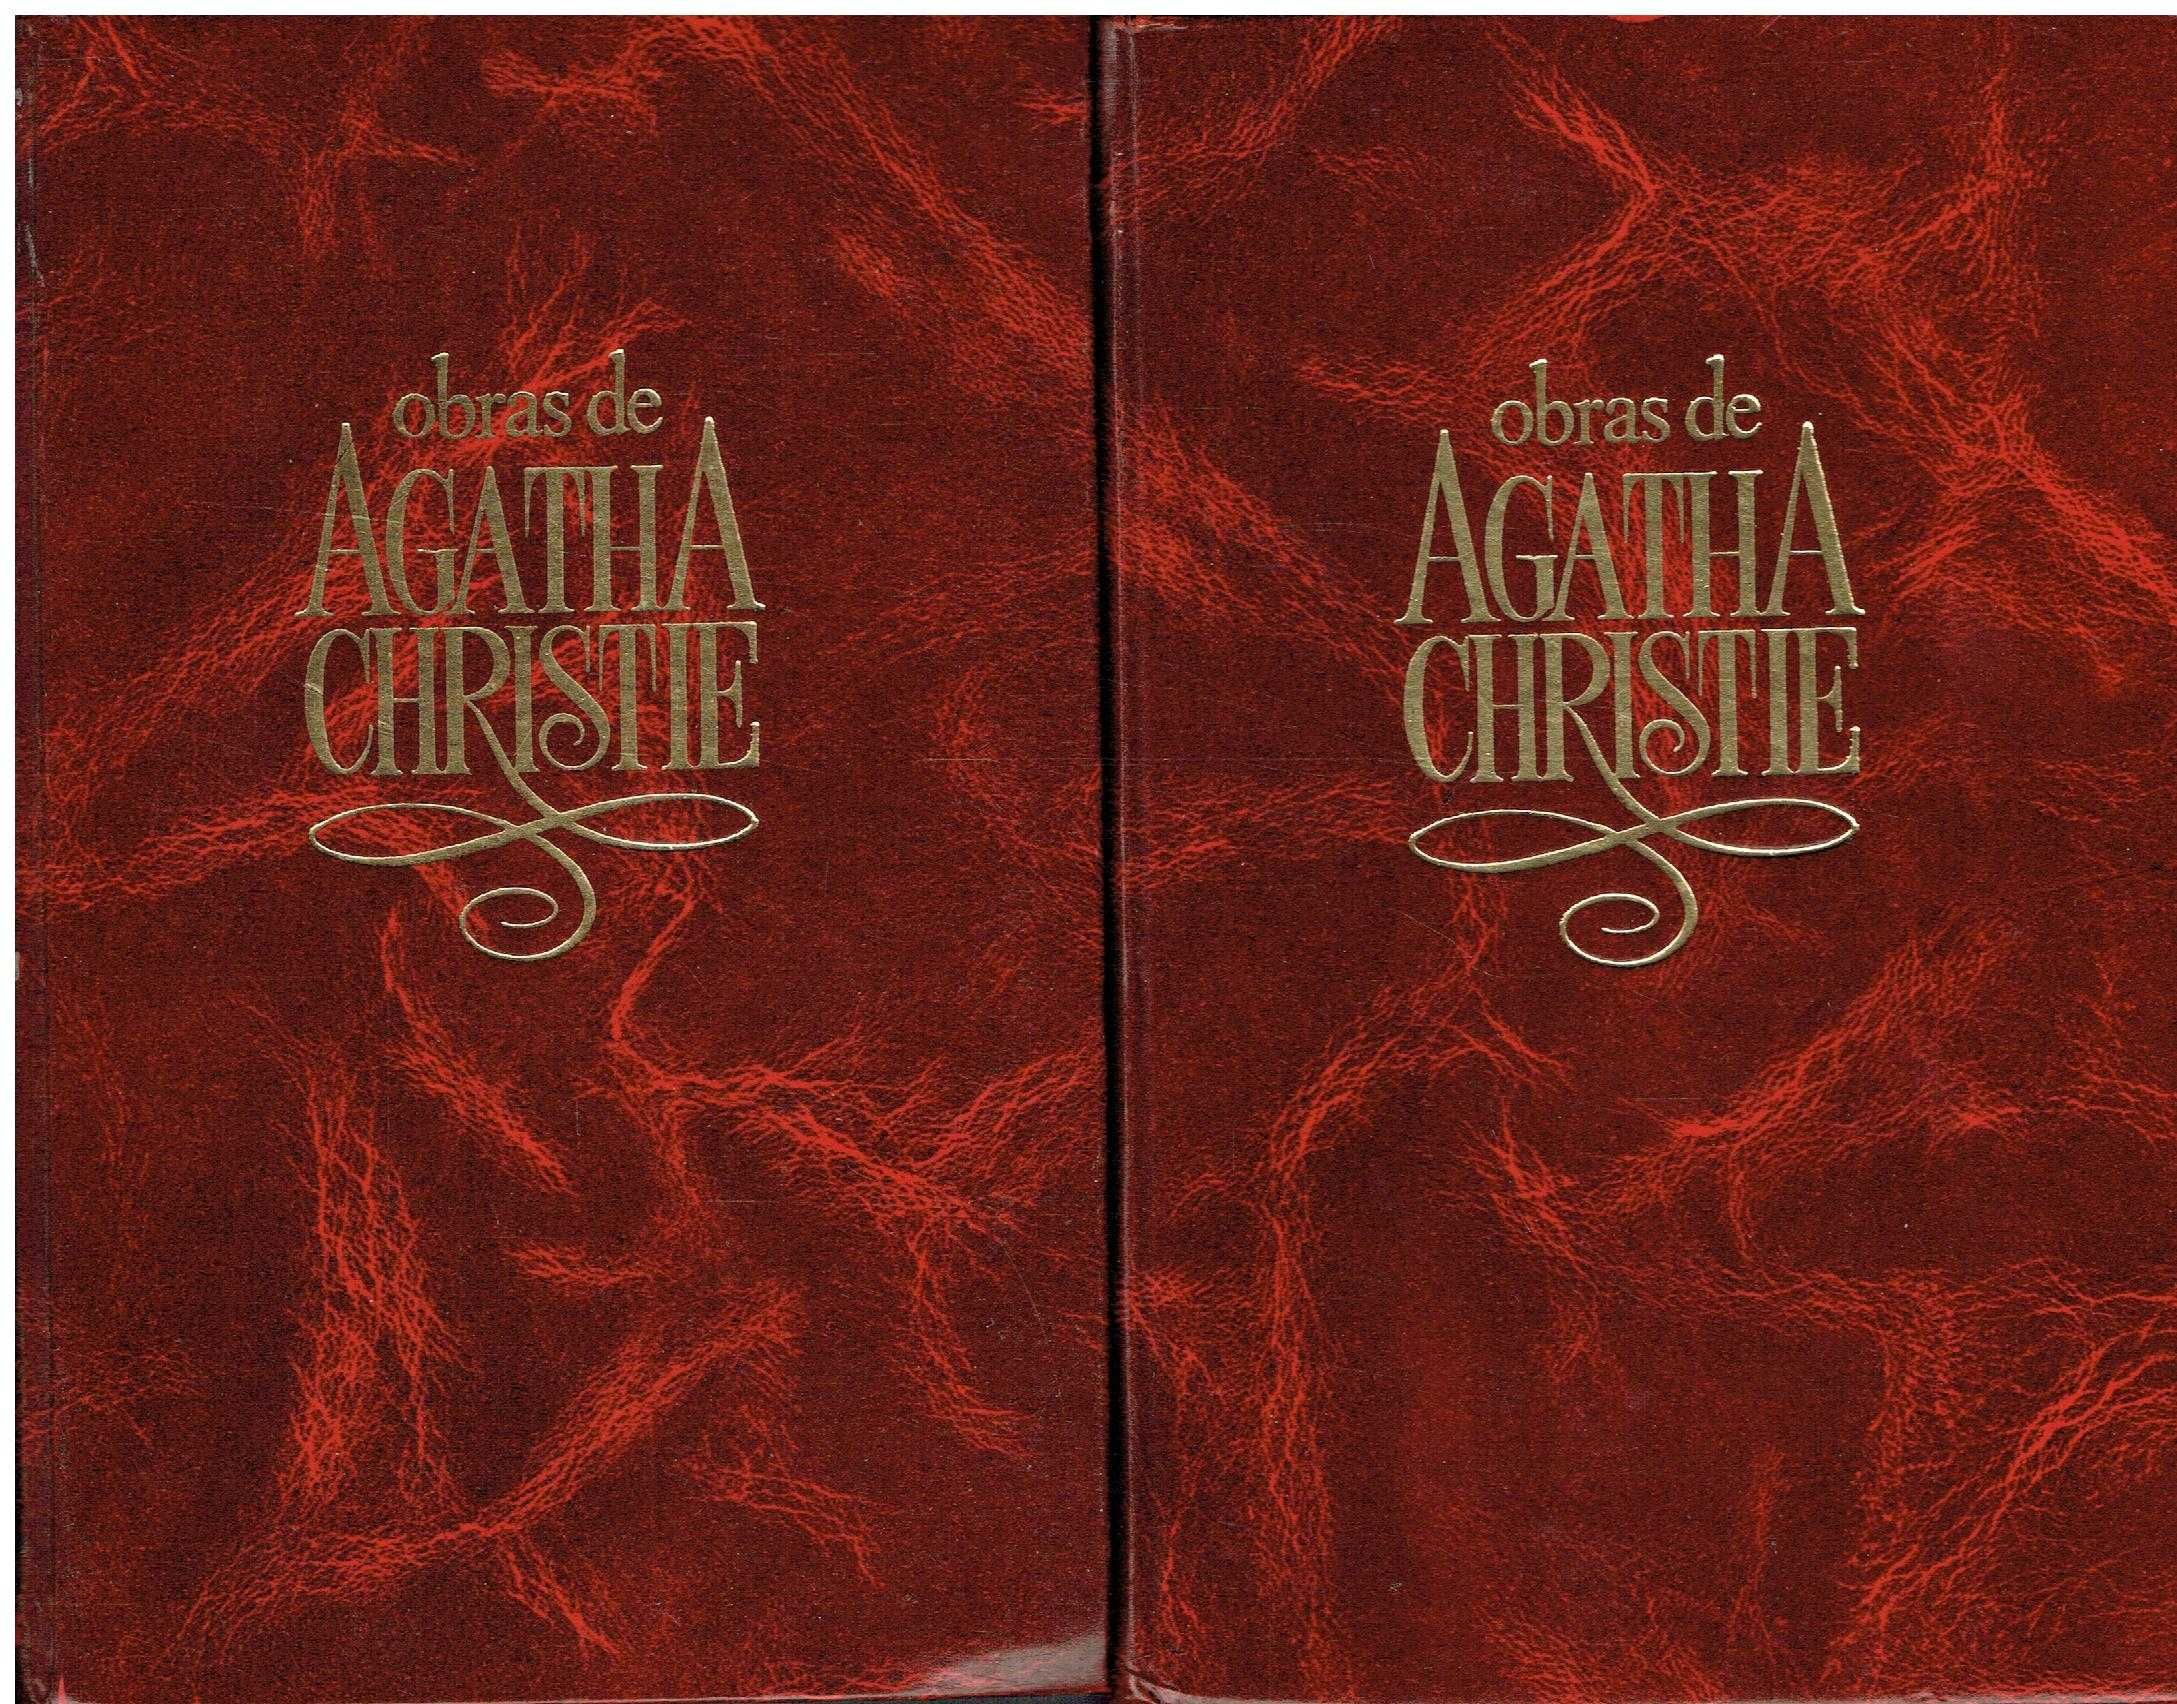 12176

Coleção Obras de Agatha Christie - Encadernados